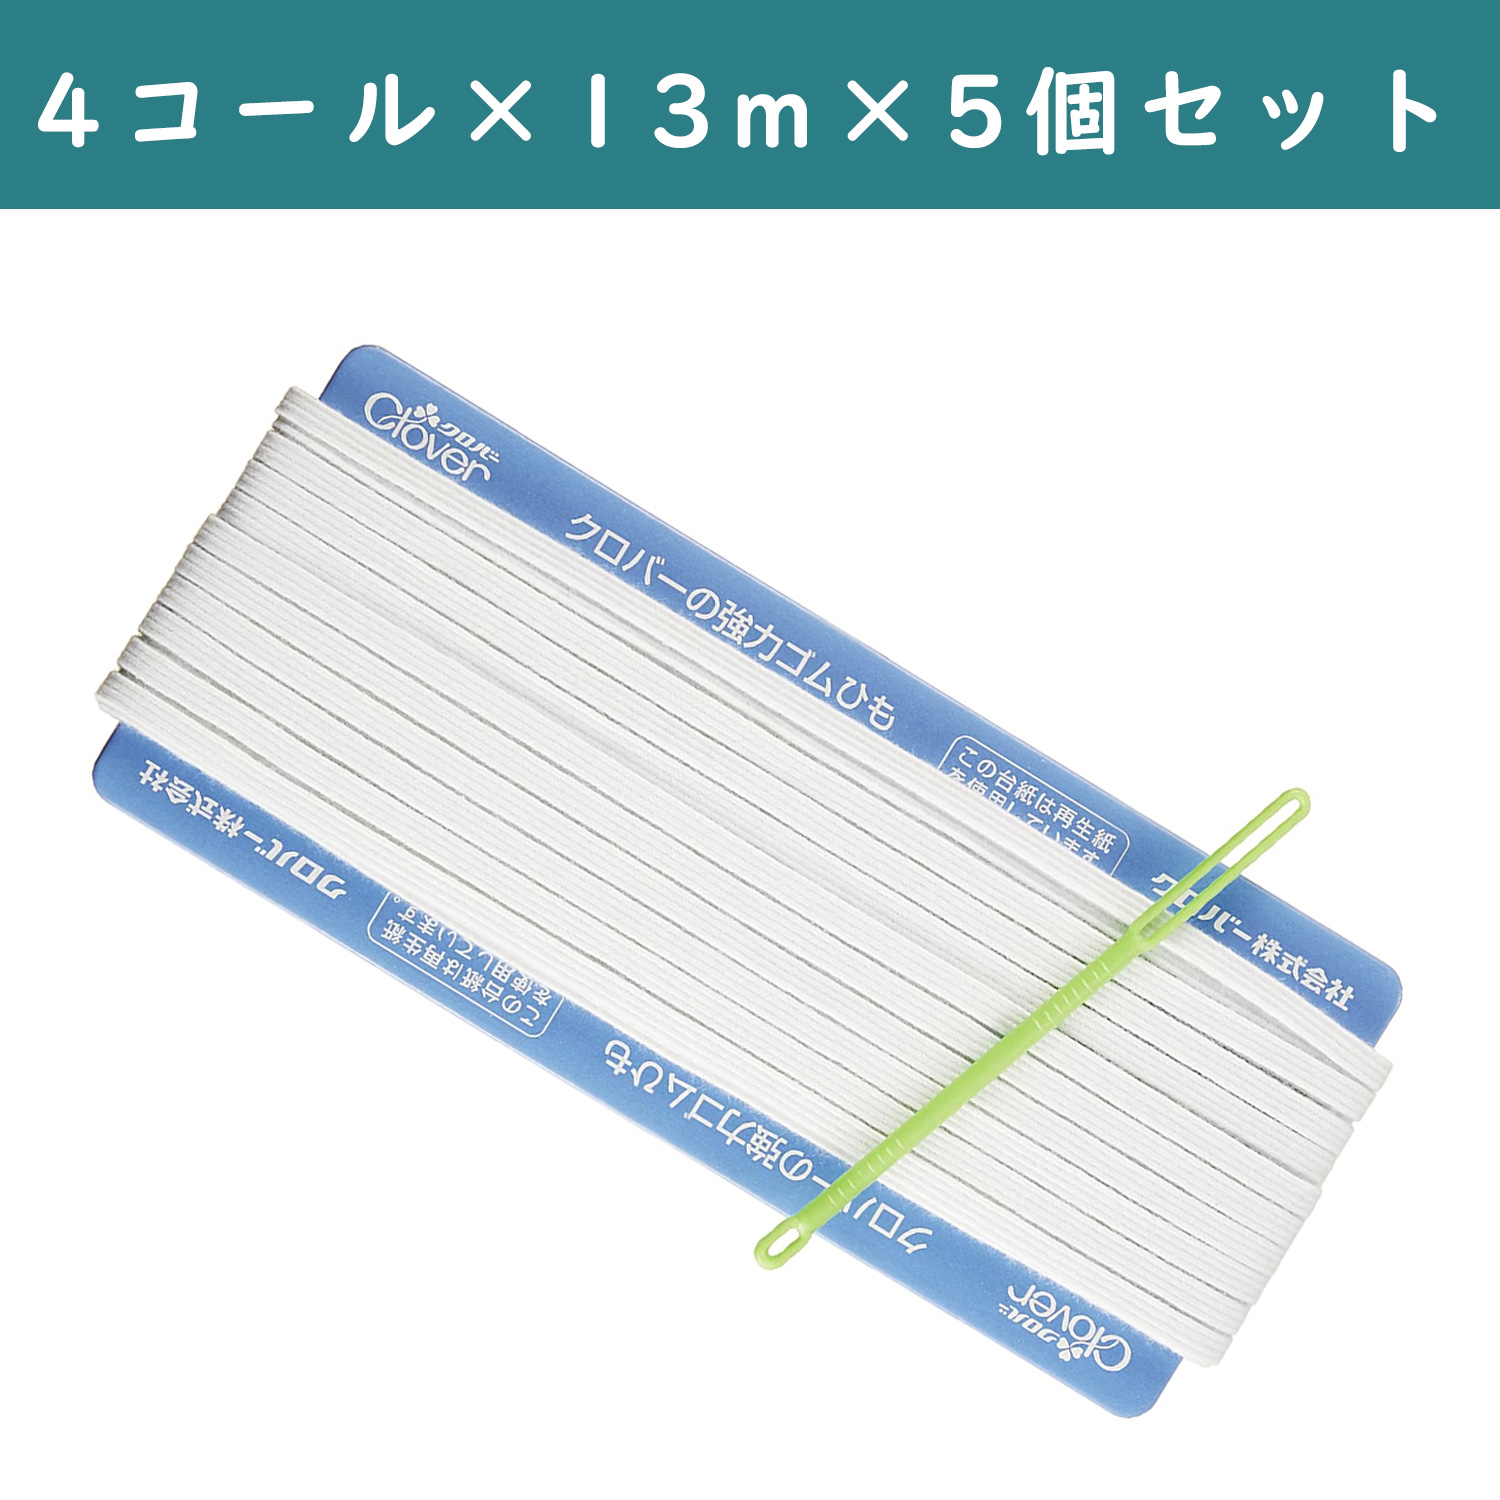 ■【5個】CL26-058-5set 強力替えゴム 4コール 白 ×5個 (セット)